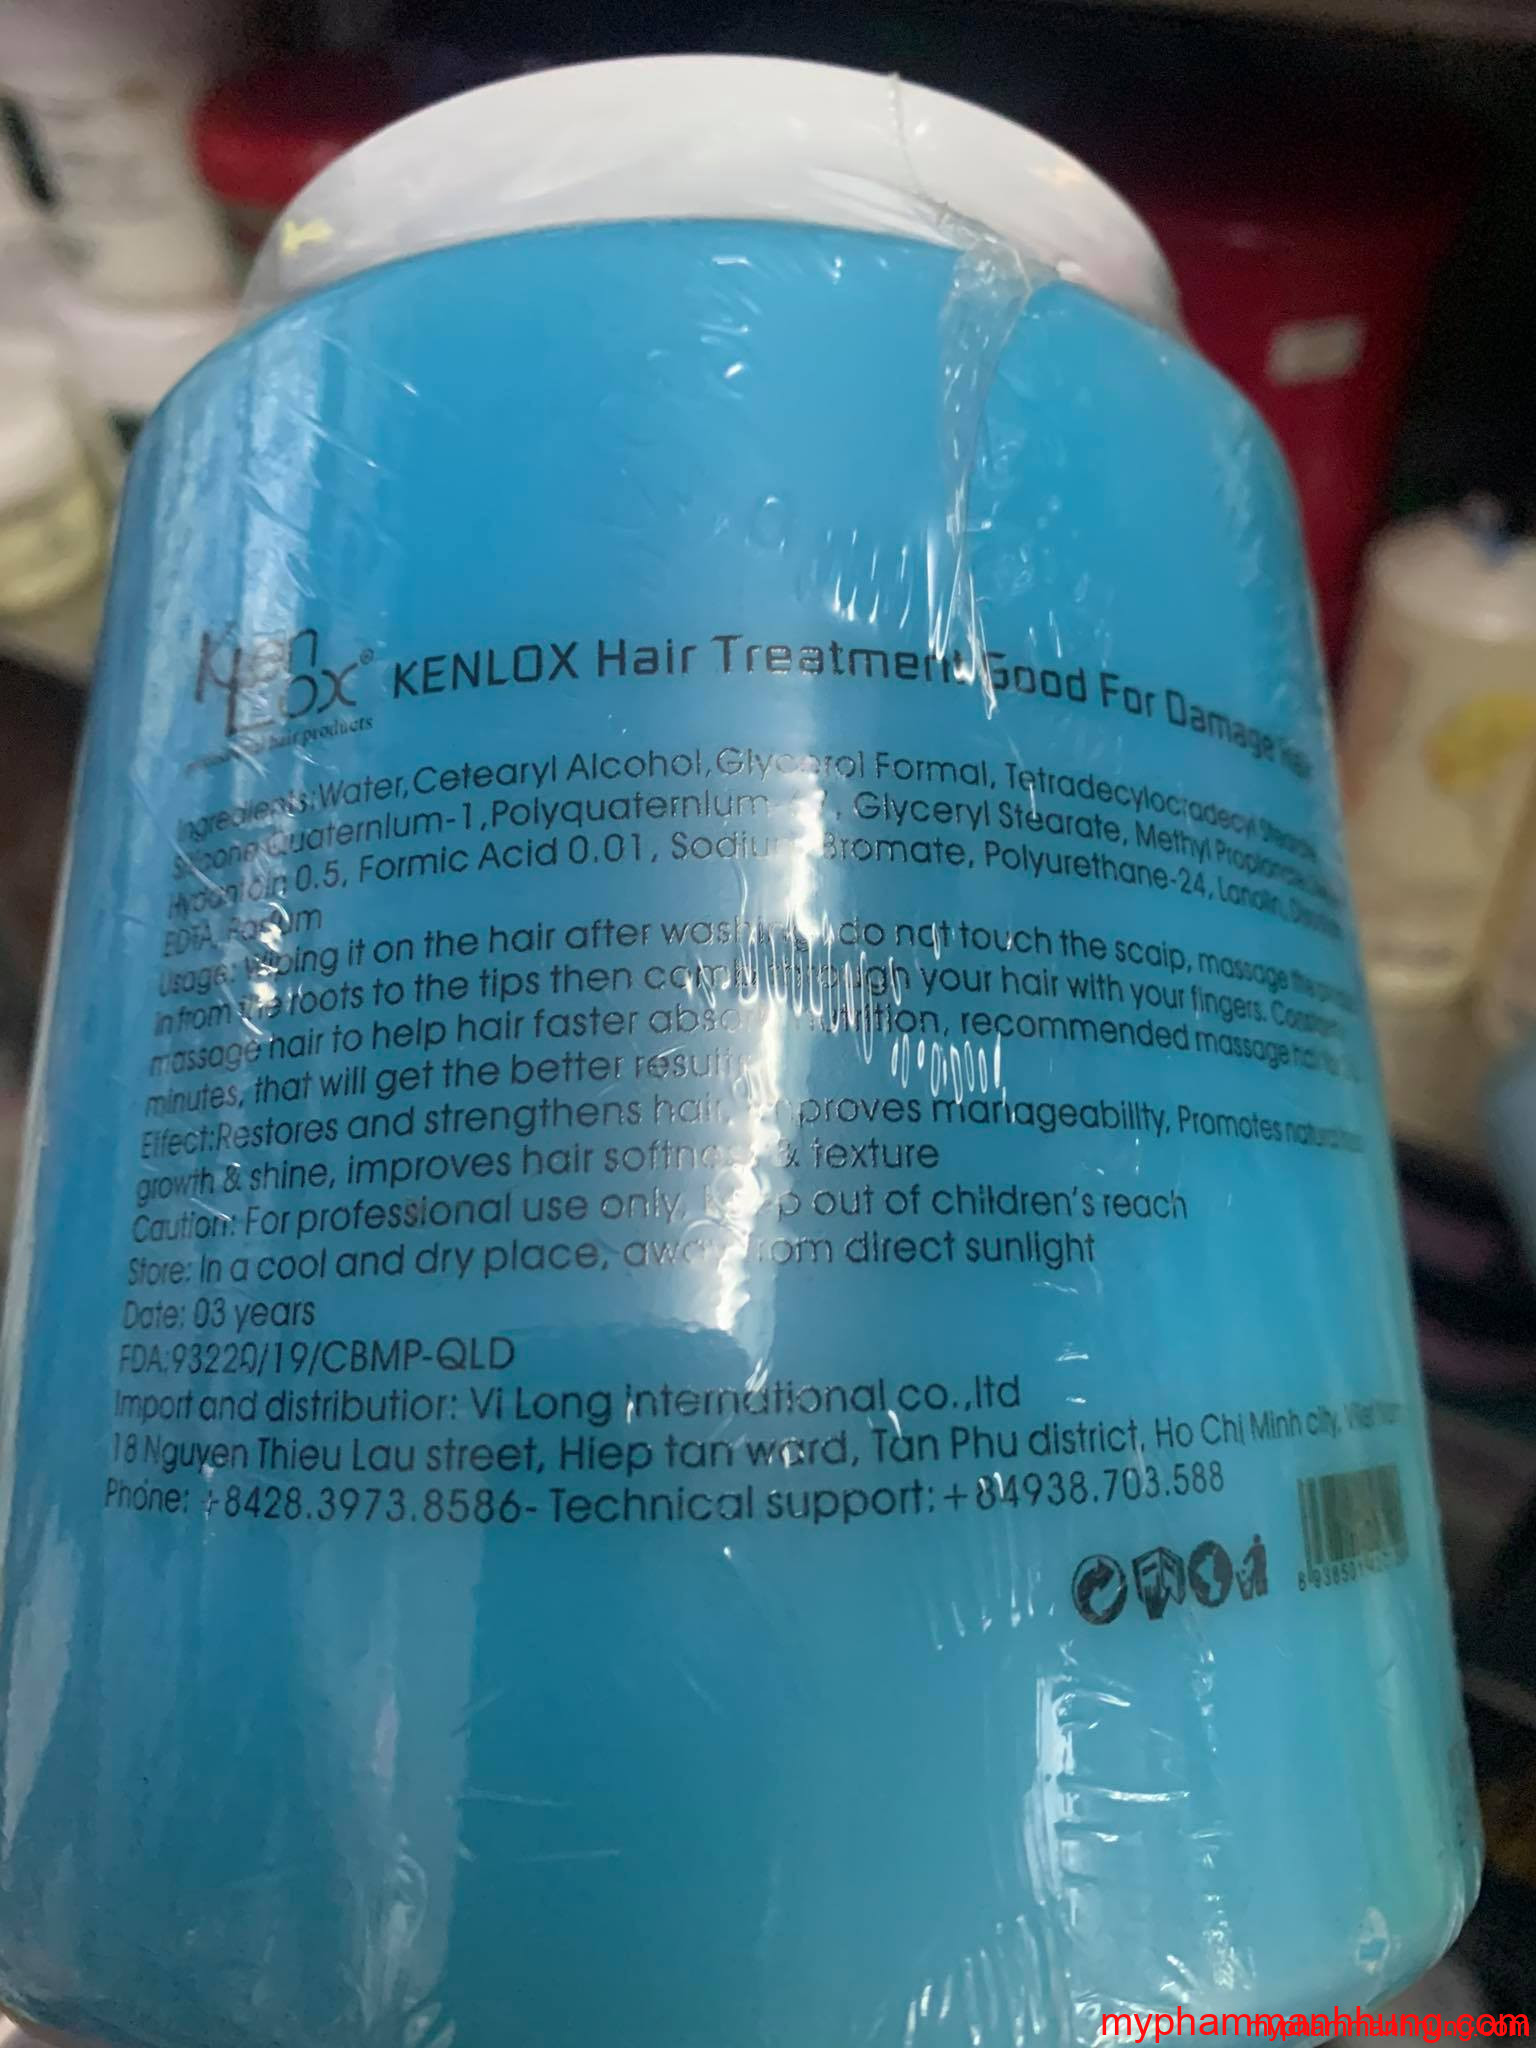 Kem hấp dầu mềm mượt Kenlox 1000ml - Mỹ Phẩm Tóc Hải Phòng - Mạnh Hùng